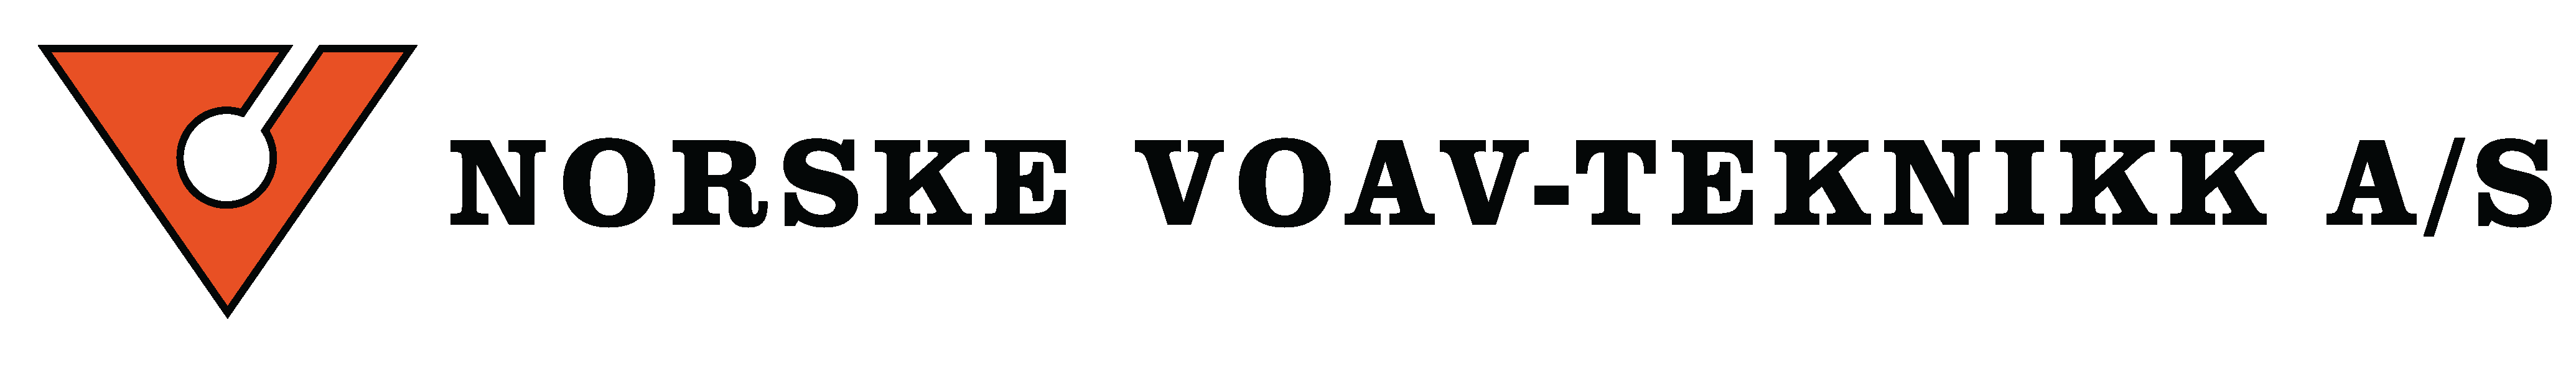 Norske-voav-logo-2